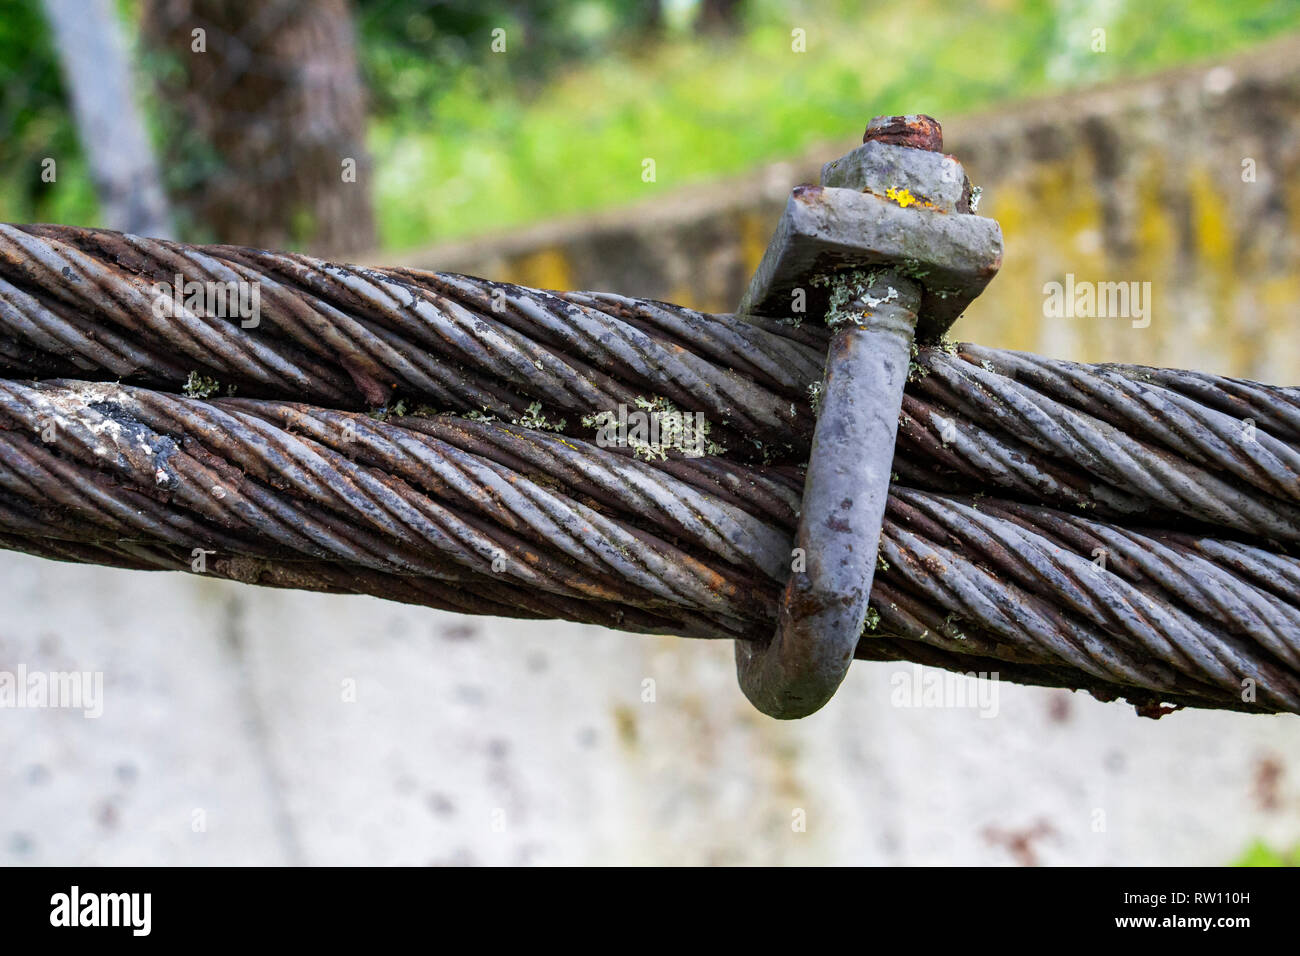 In der Nähe Bild von einem Seil mit einem Seil spannen einer alten  bulgarischen suspension Fußgängerbrücke, unscharfen Hintergrund, im Freien,  Seitenansicht Stockfotografie - Alamy